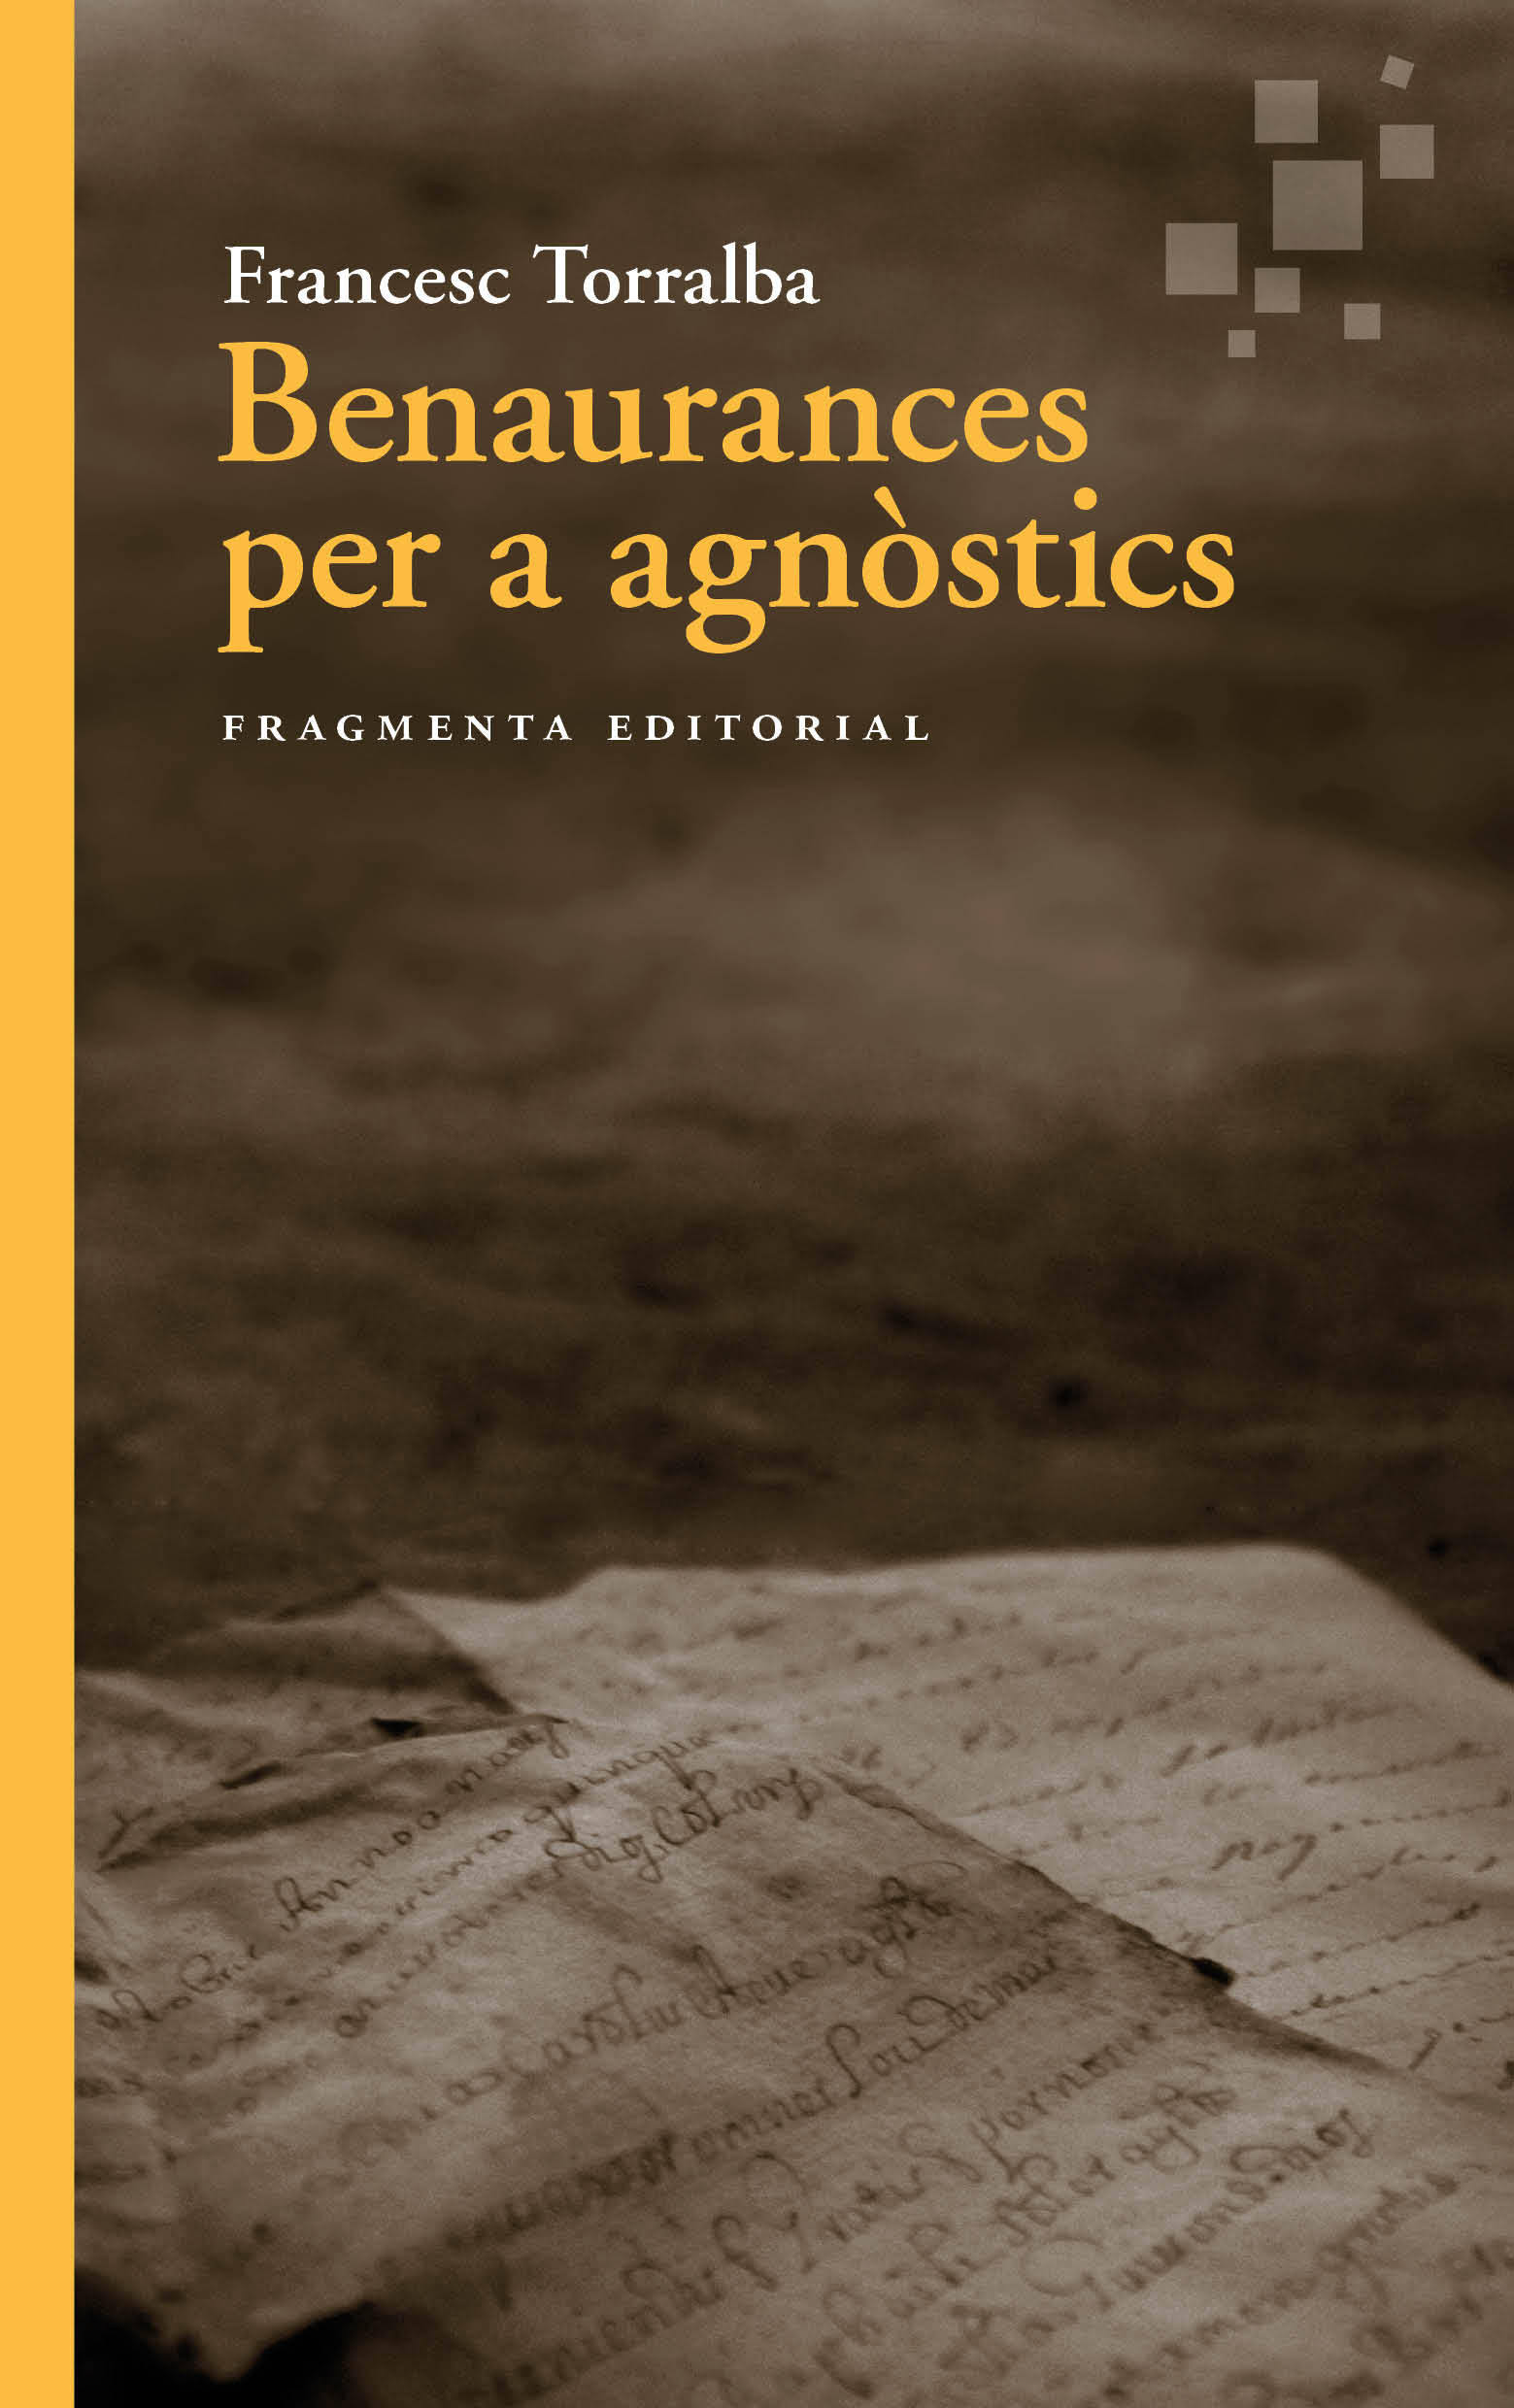 PRESENTACIÓ DE LLIBRE: Benaurances per a agnòstics